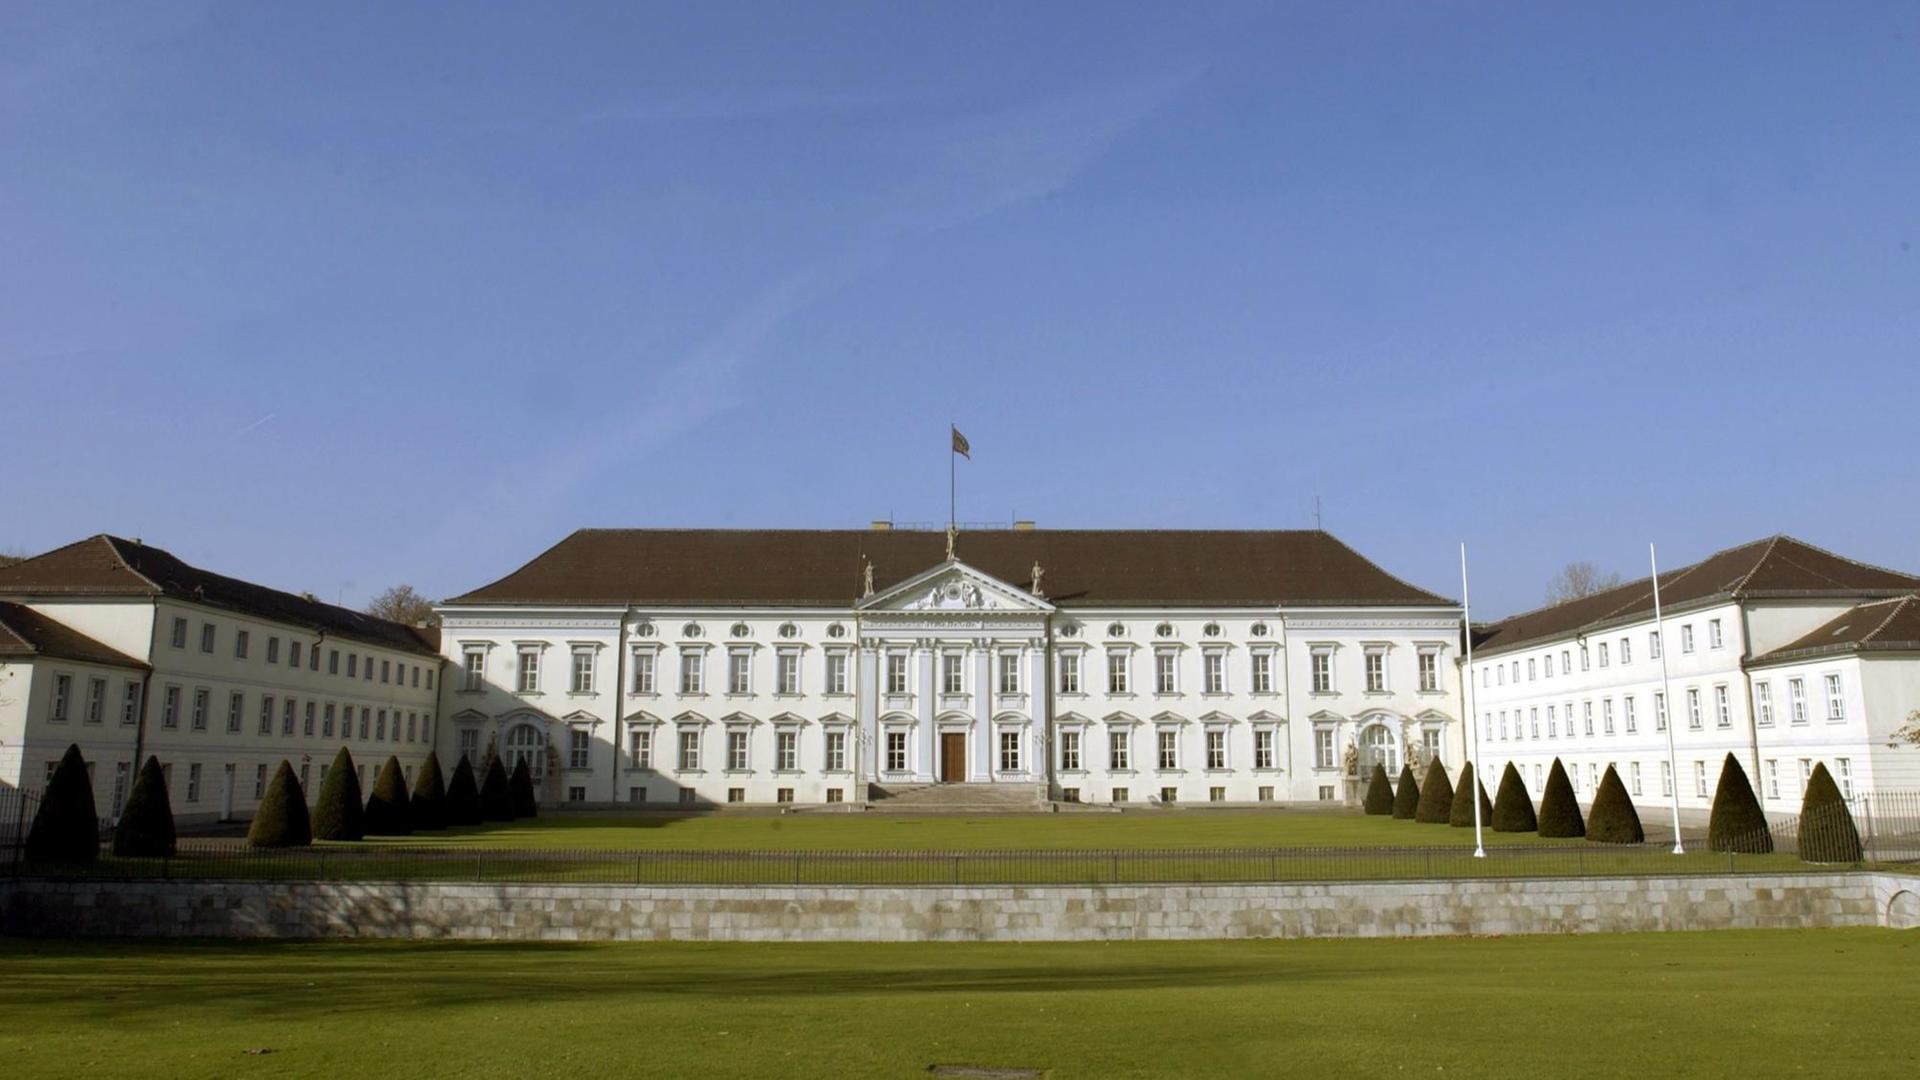 Außenansicht des Schlosses Bellevue in Berlin-Tiergarten, dem Sitz des Bundespräsidenten